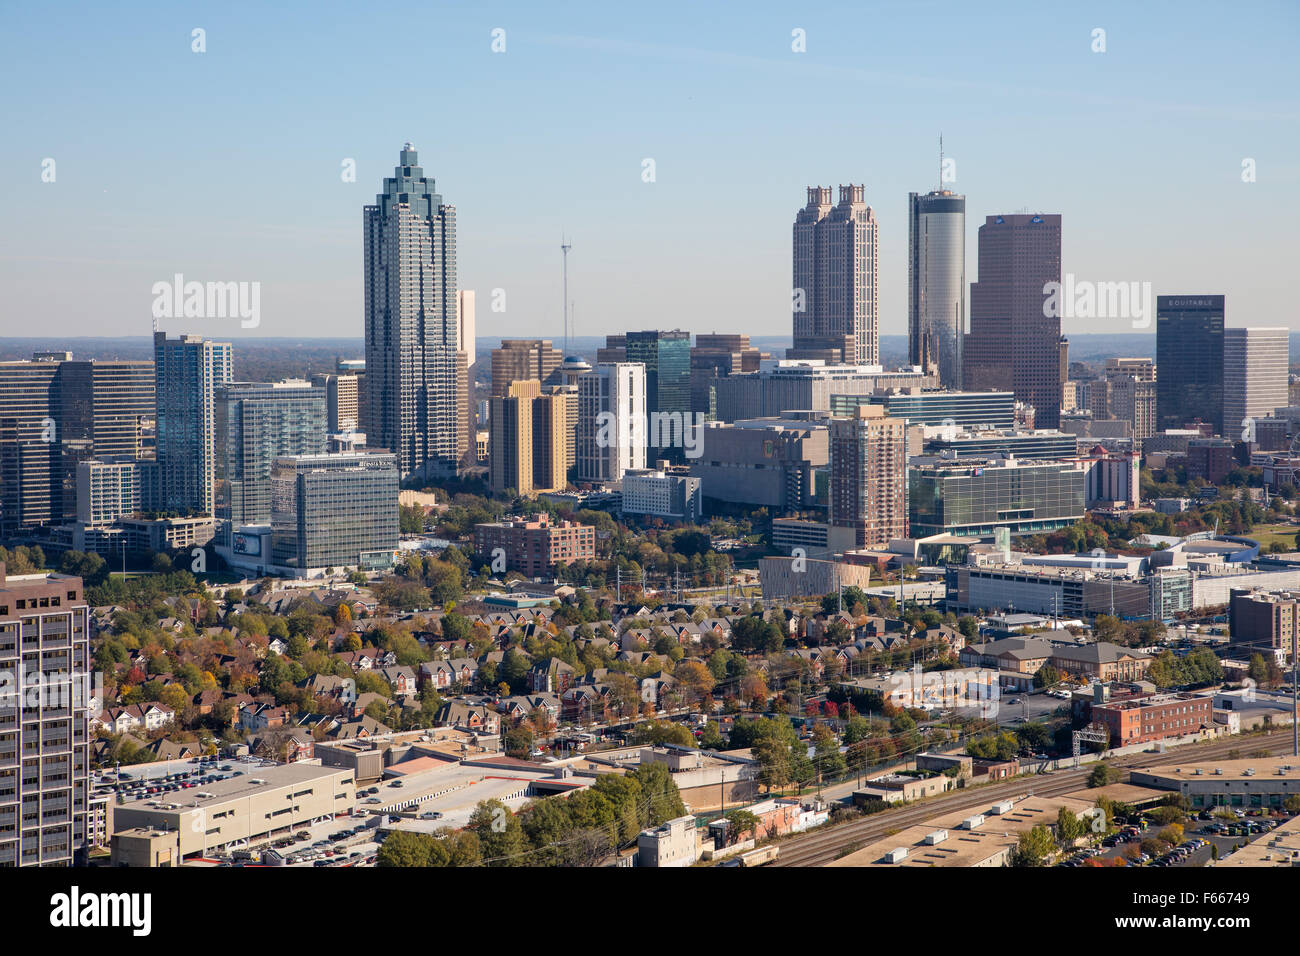 Fotografía aérea de Atlanta, Georgia, EE.UU. tomada el 11/10/2015 Foto de stock